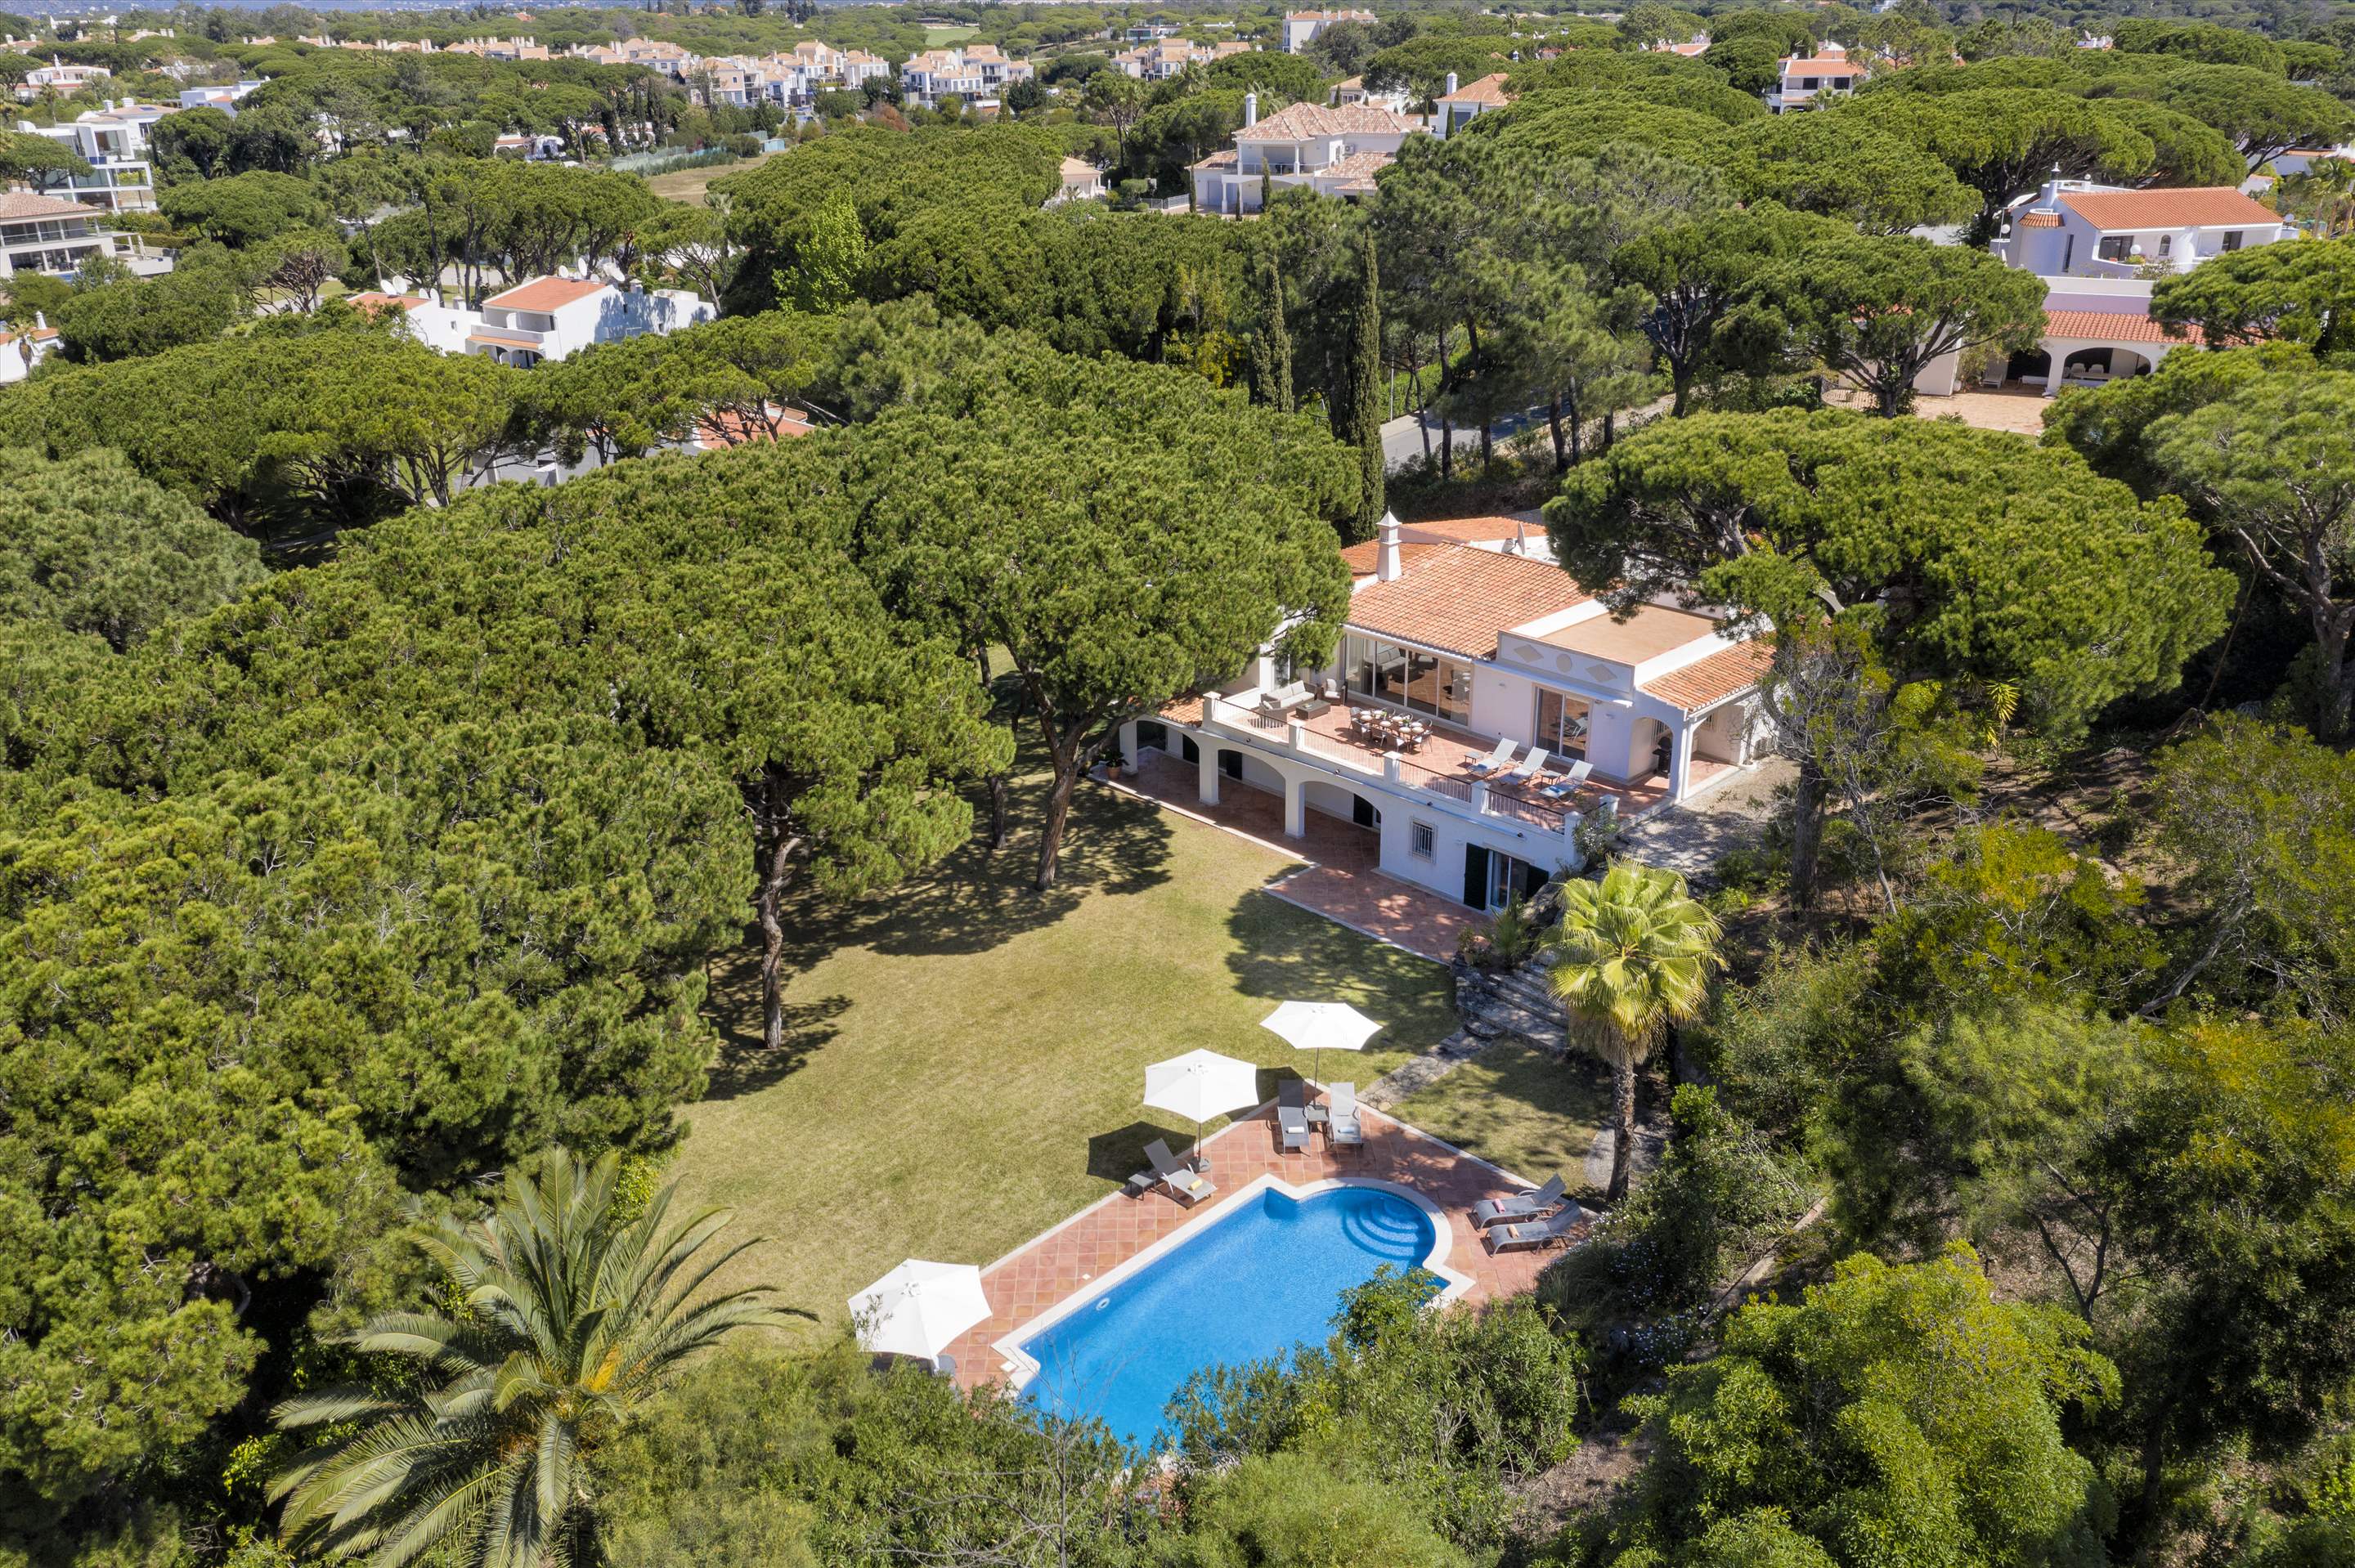 Villa Rosemaria, 5 Bedrooms, 5 bedroom villa in Vale do Lobo, Algarve Photo #20